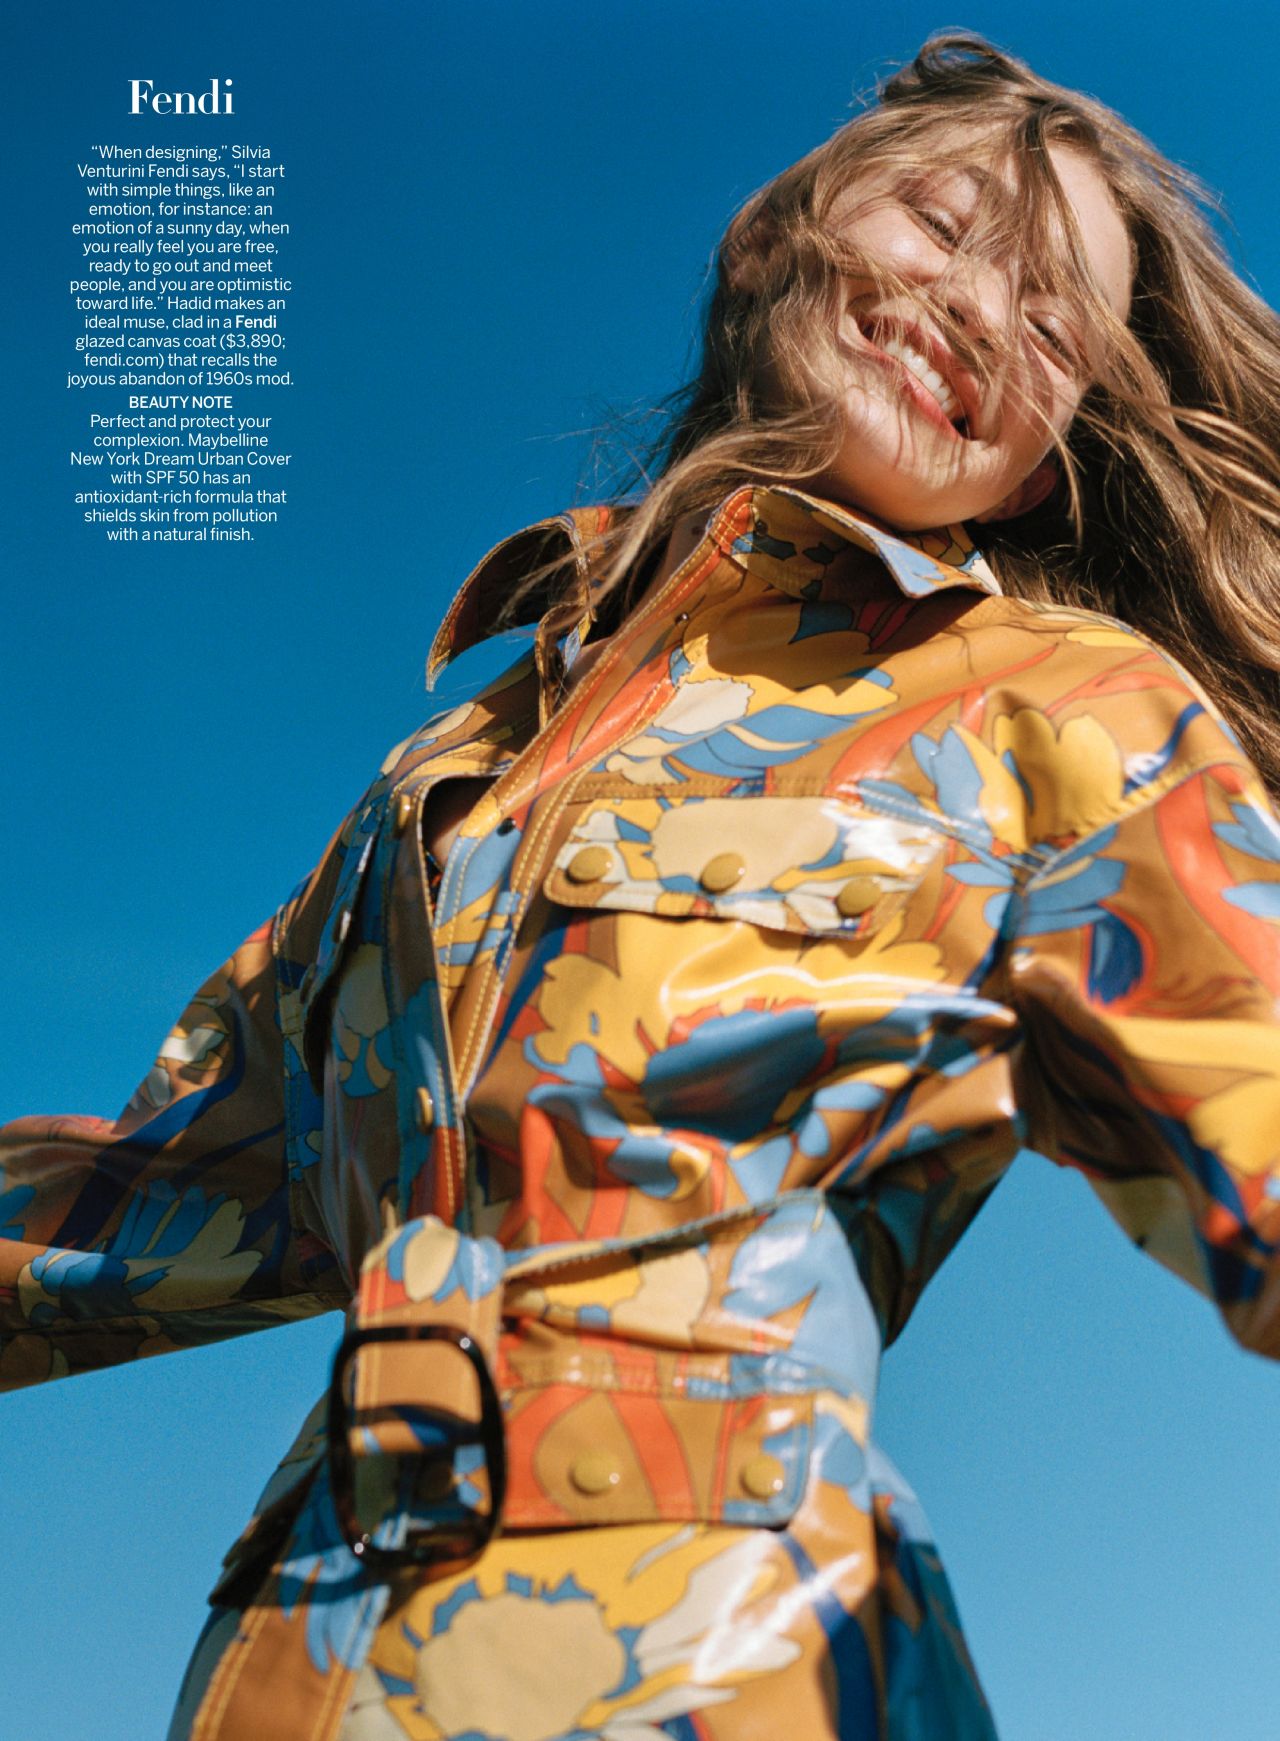 Gigi Hadid In Fendi @ Vogue Magazine January 2020 Issue